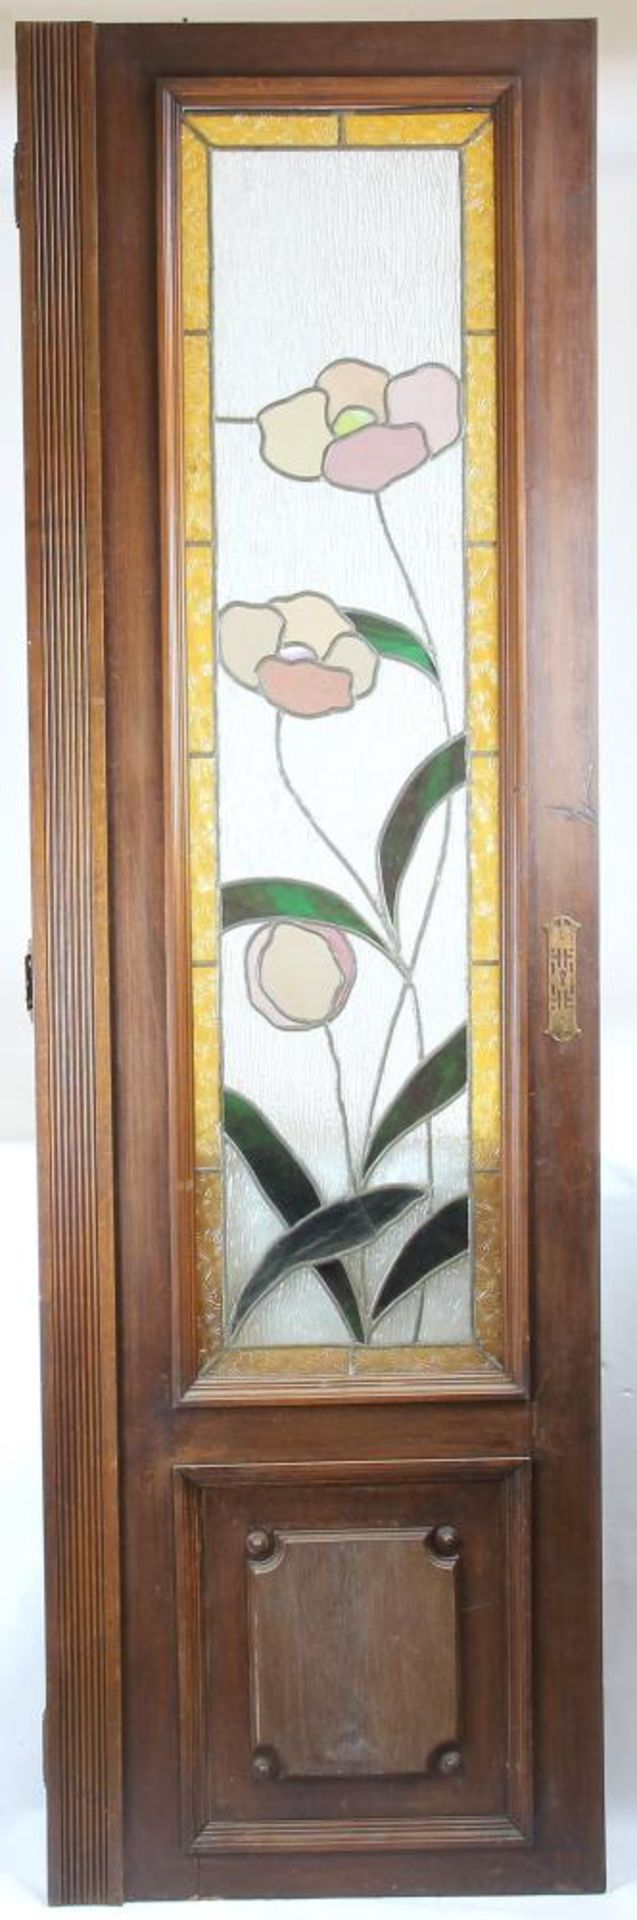 Jugendstil Glasfenster. In Jugendstiltür eingebaut. Deutsch um 1900. Holz und Glas mit polychromem